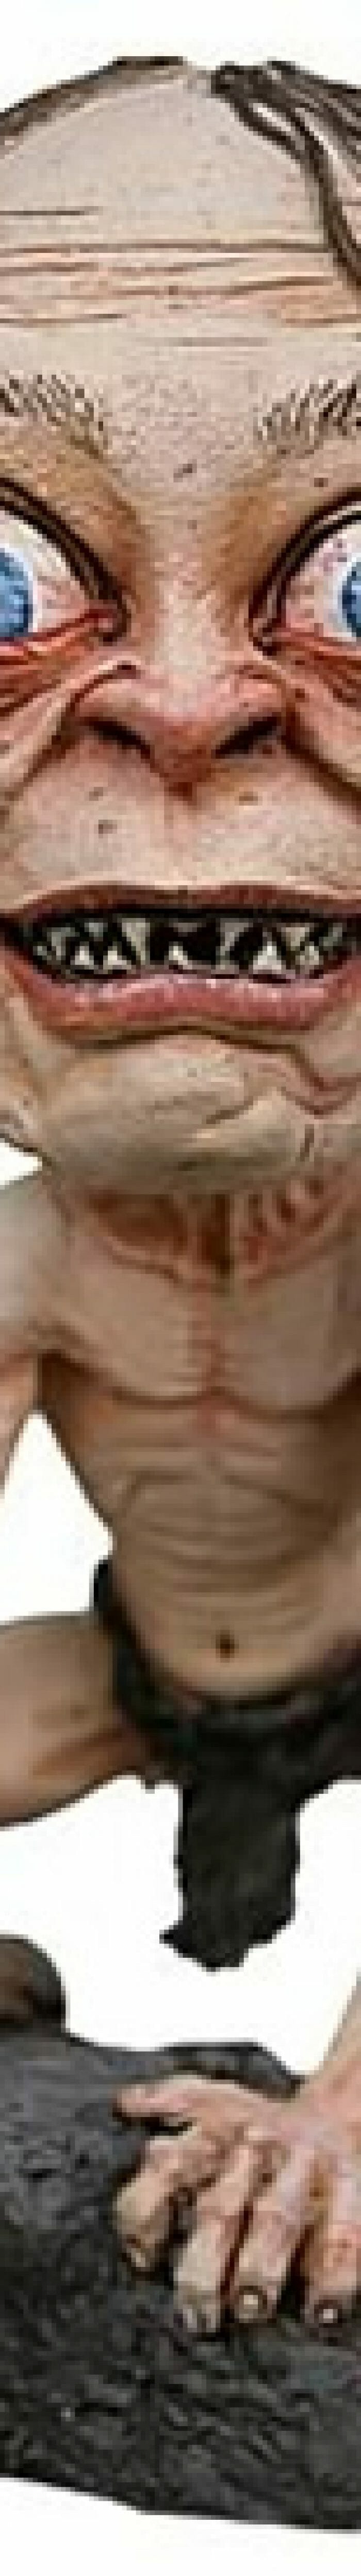 Bobble Head do Smeagol do filme Senhor dos Aneis é tão feio quanto o original